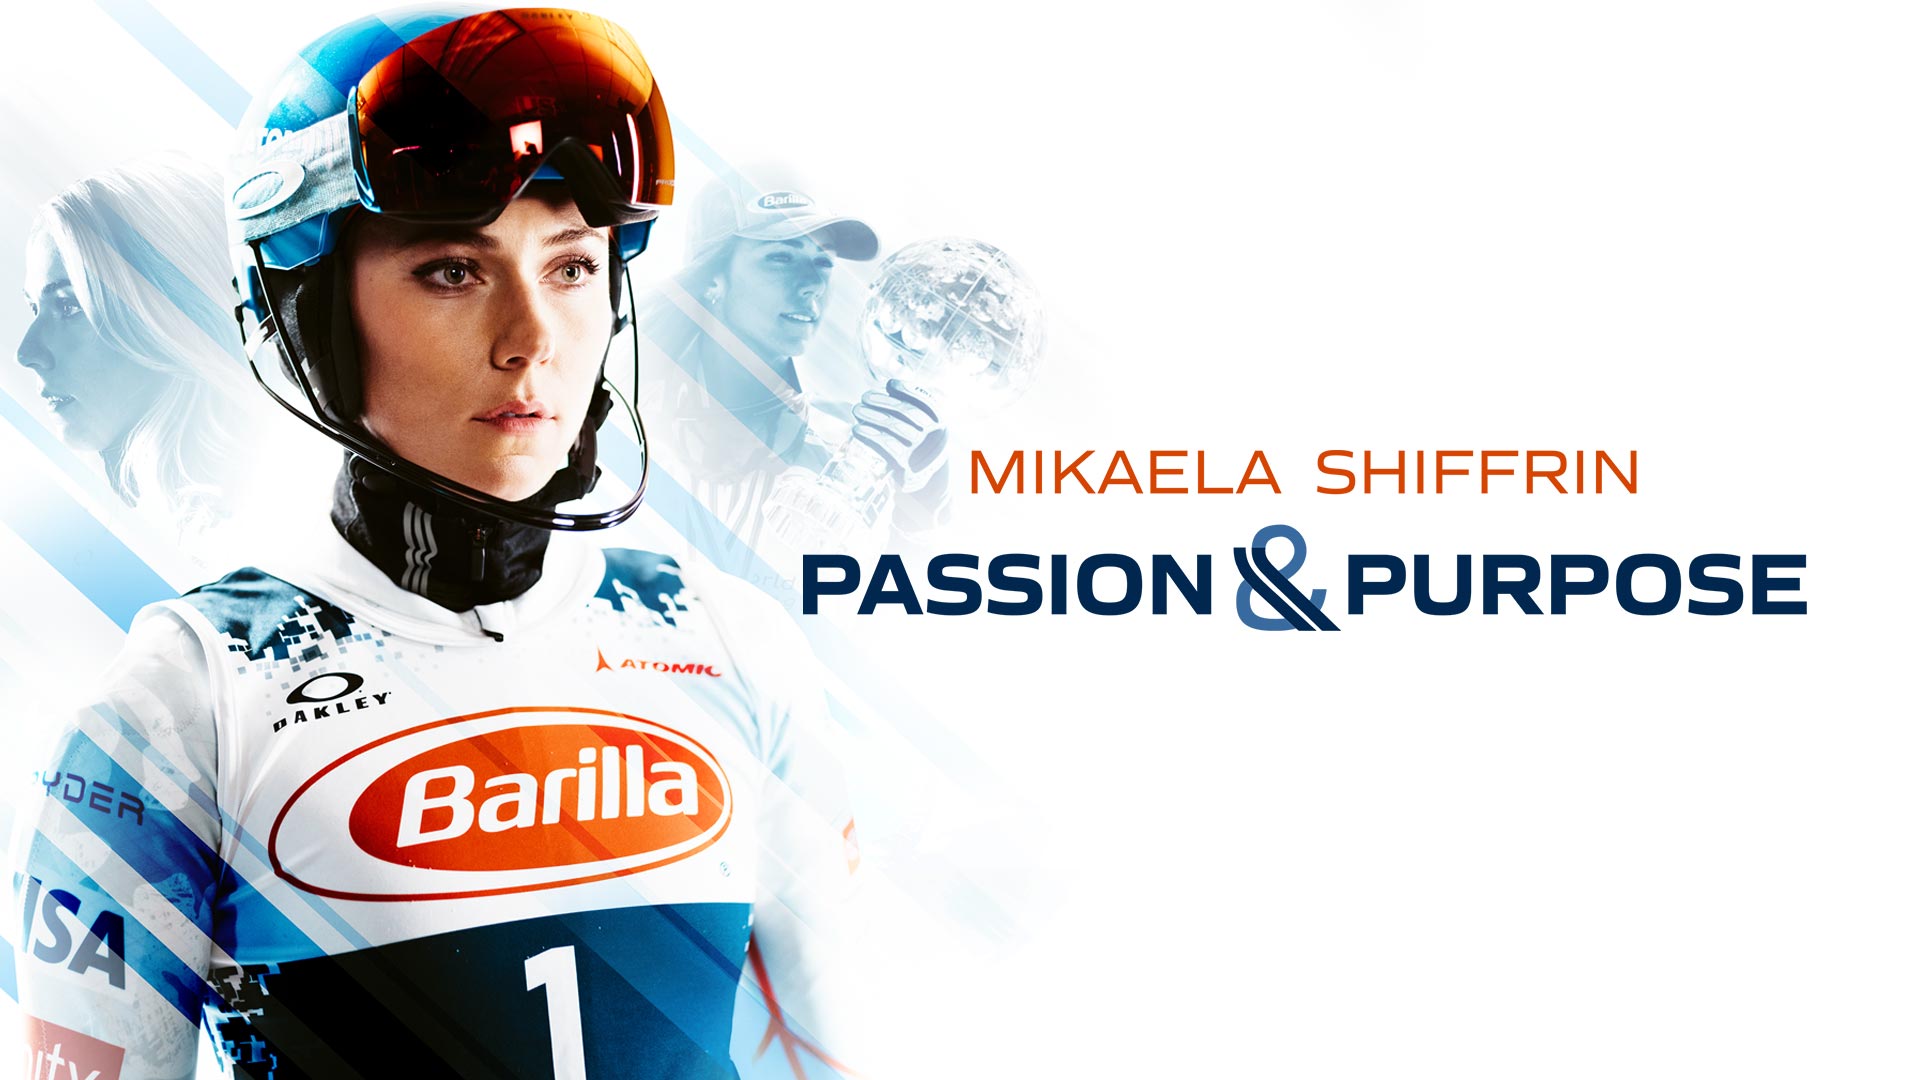 Passion and Purpose: Mikaela Shiffrin